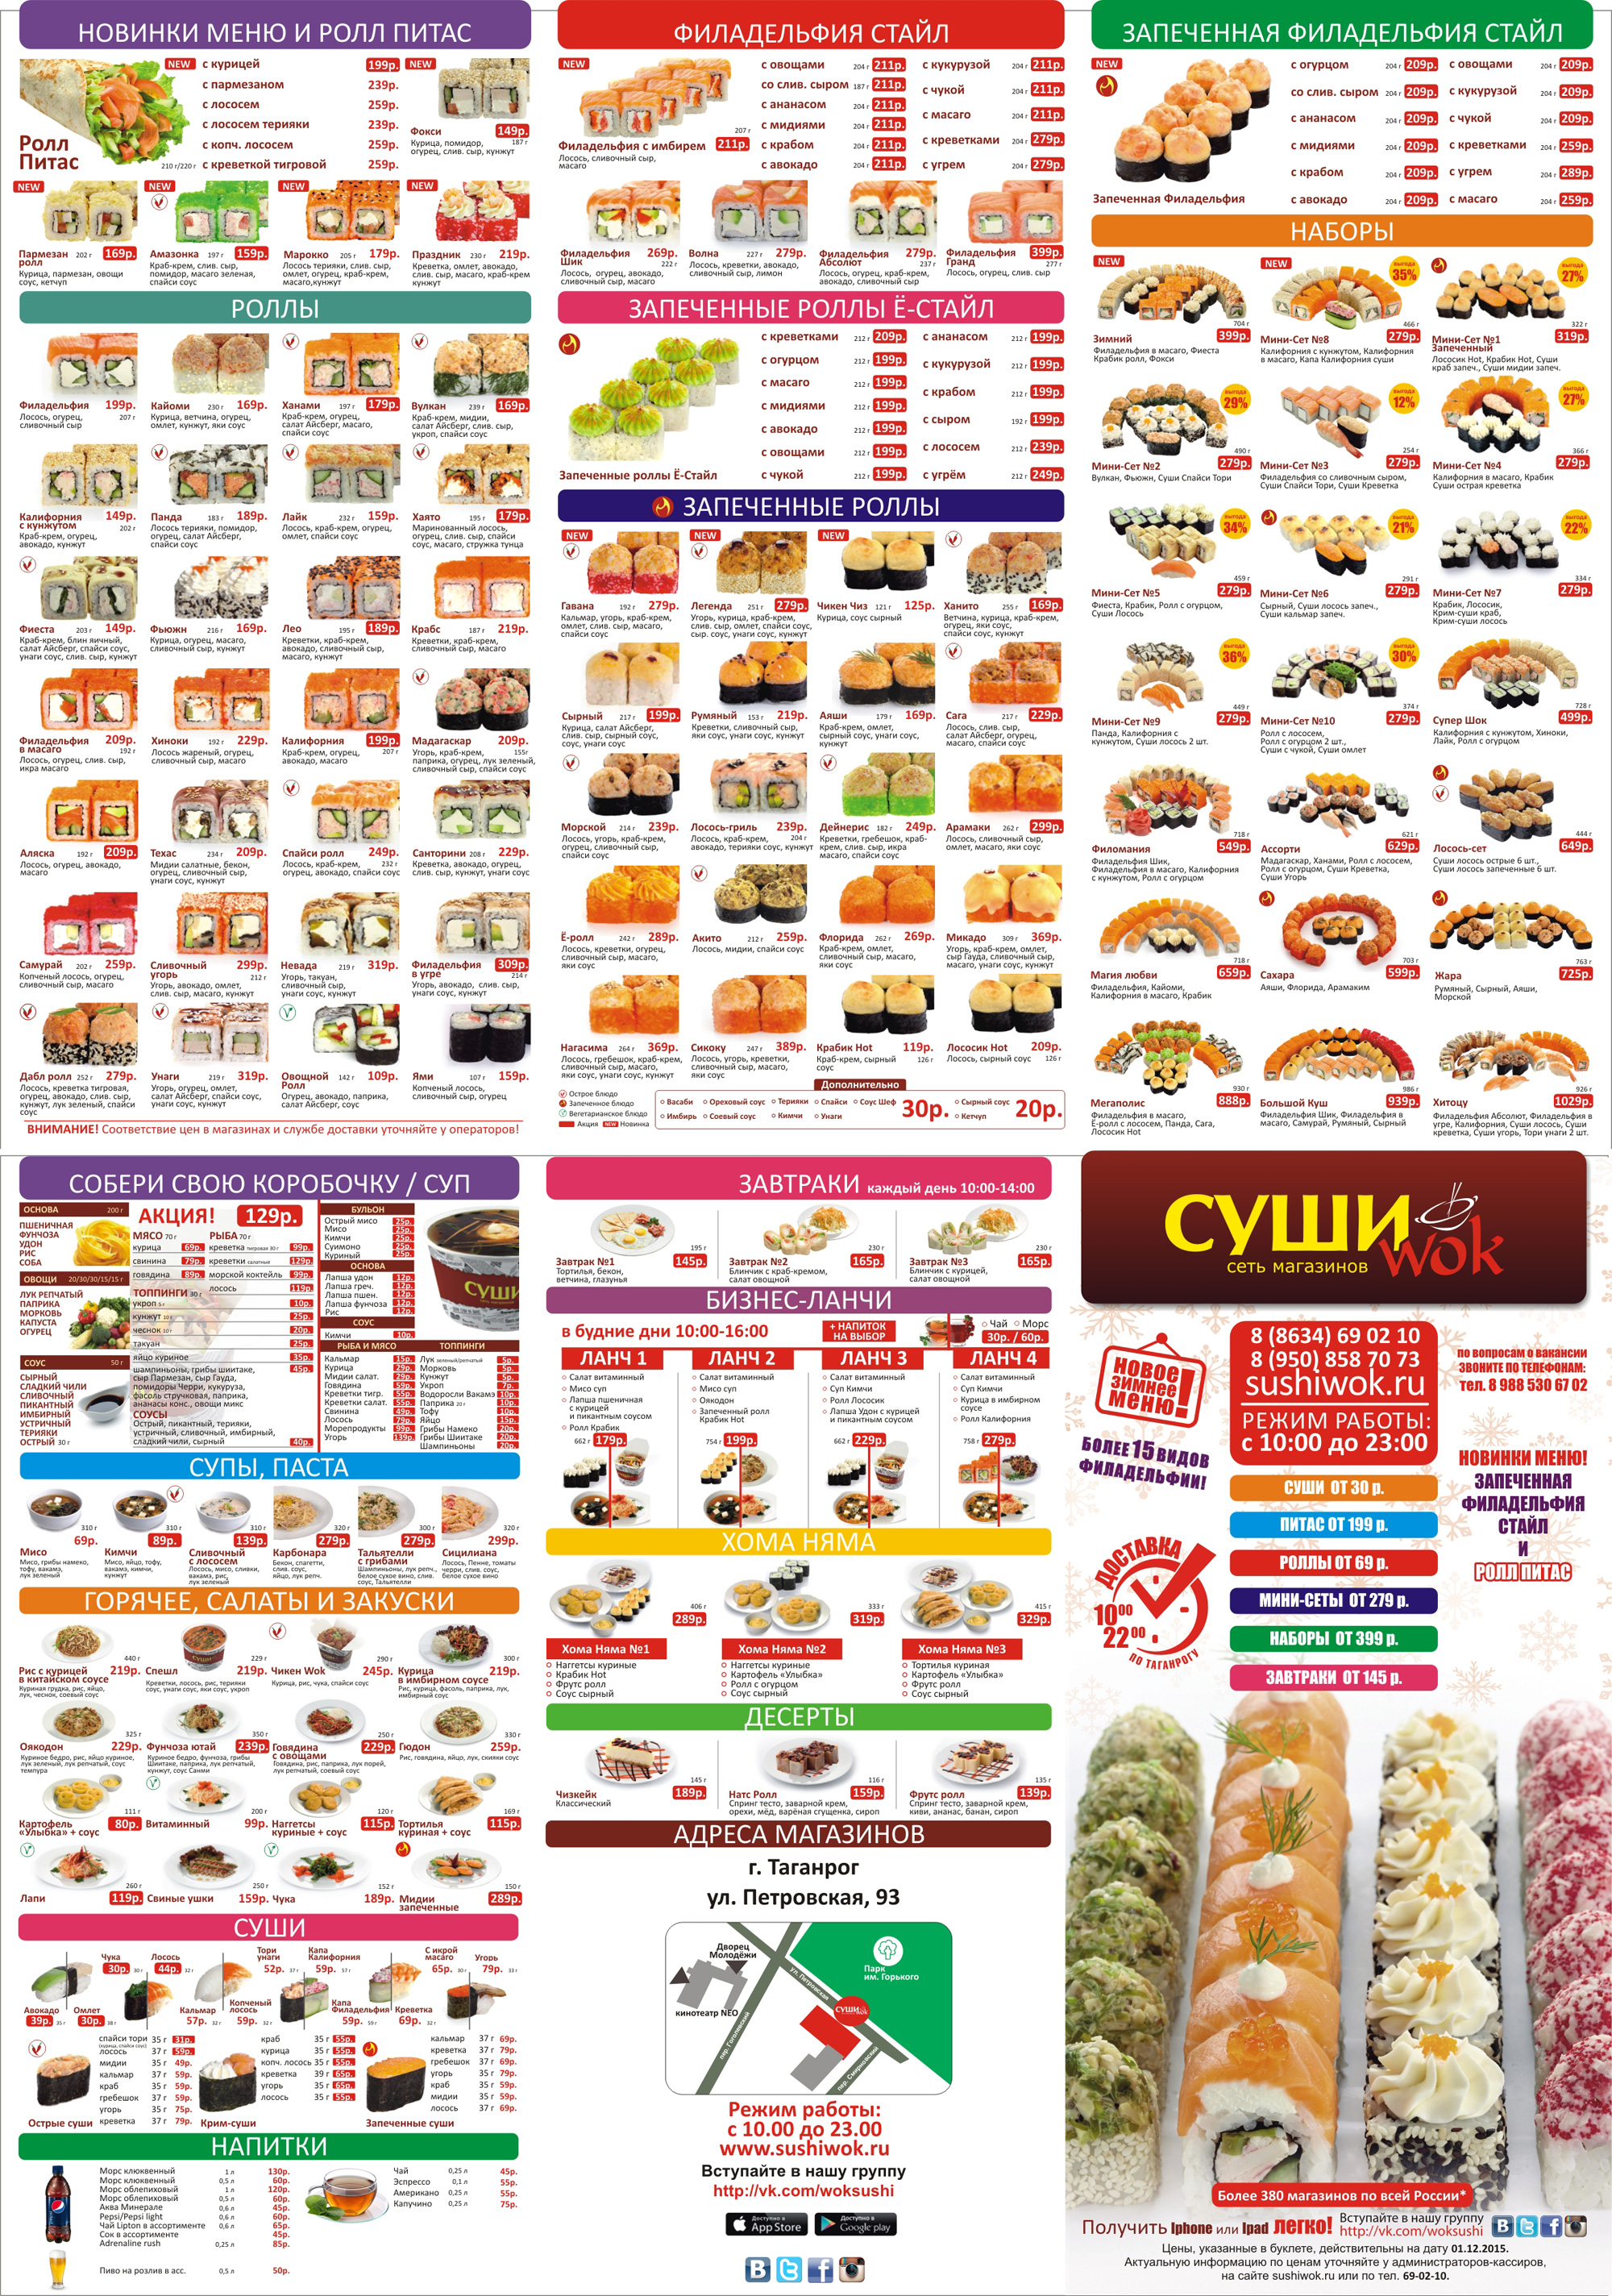 Суши вок меню москва цены наборы (120) фото